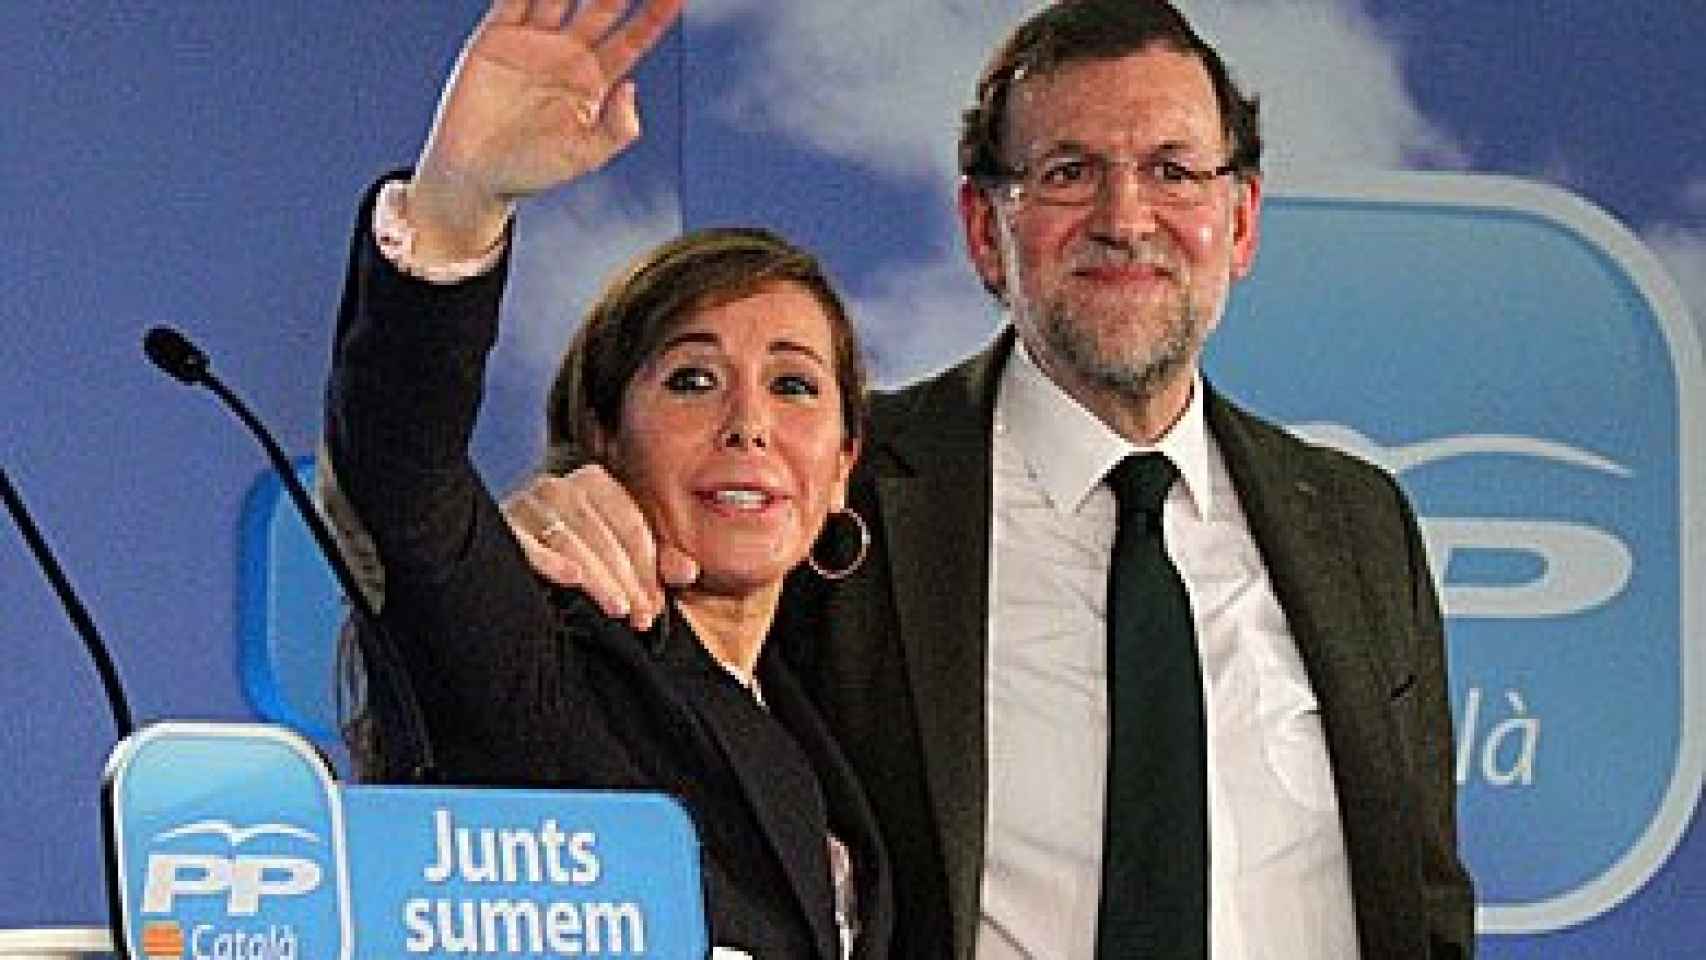 La presidenta del PP catalán, Alicia Sánchez-Camacho, y el presidente del Gobierno, Mariano Rajoy, en la convención Juntos sumamos, organizada por el PP en Barcelona